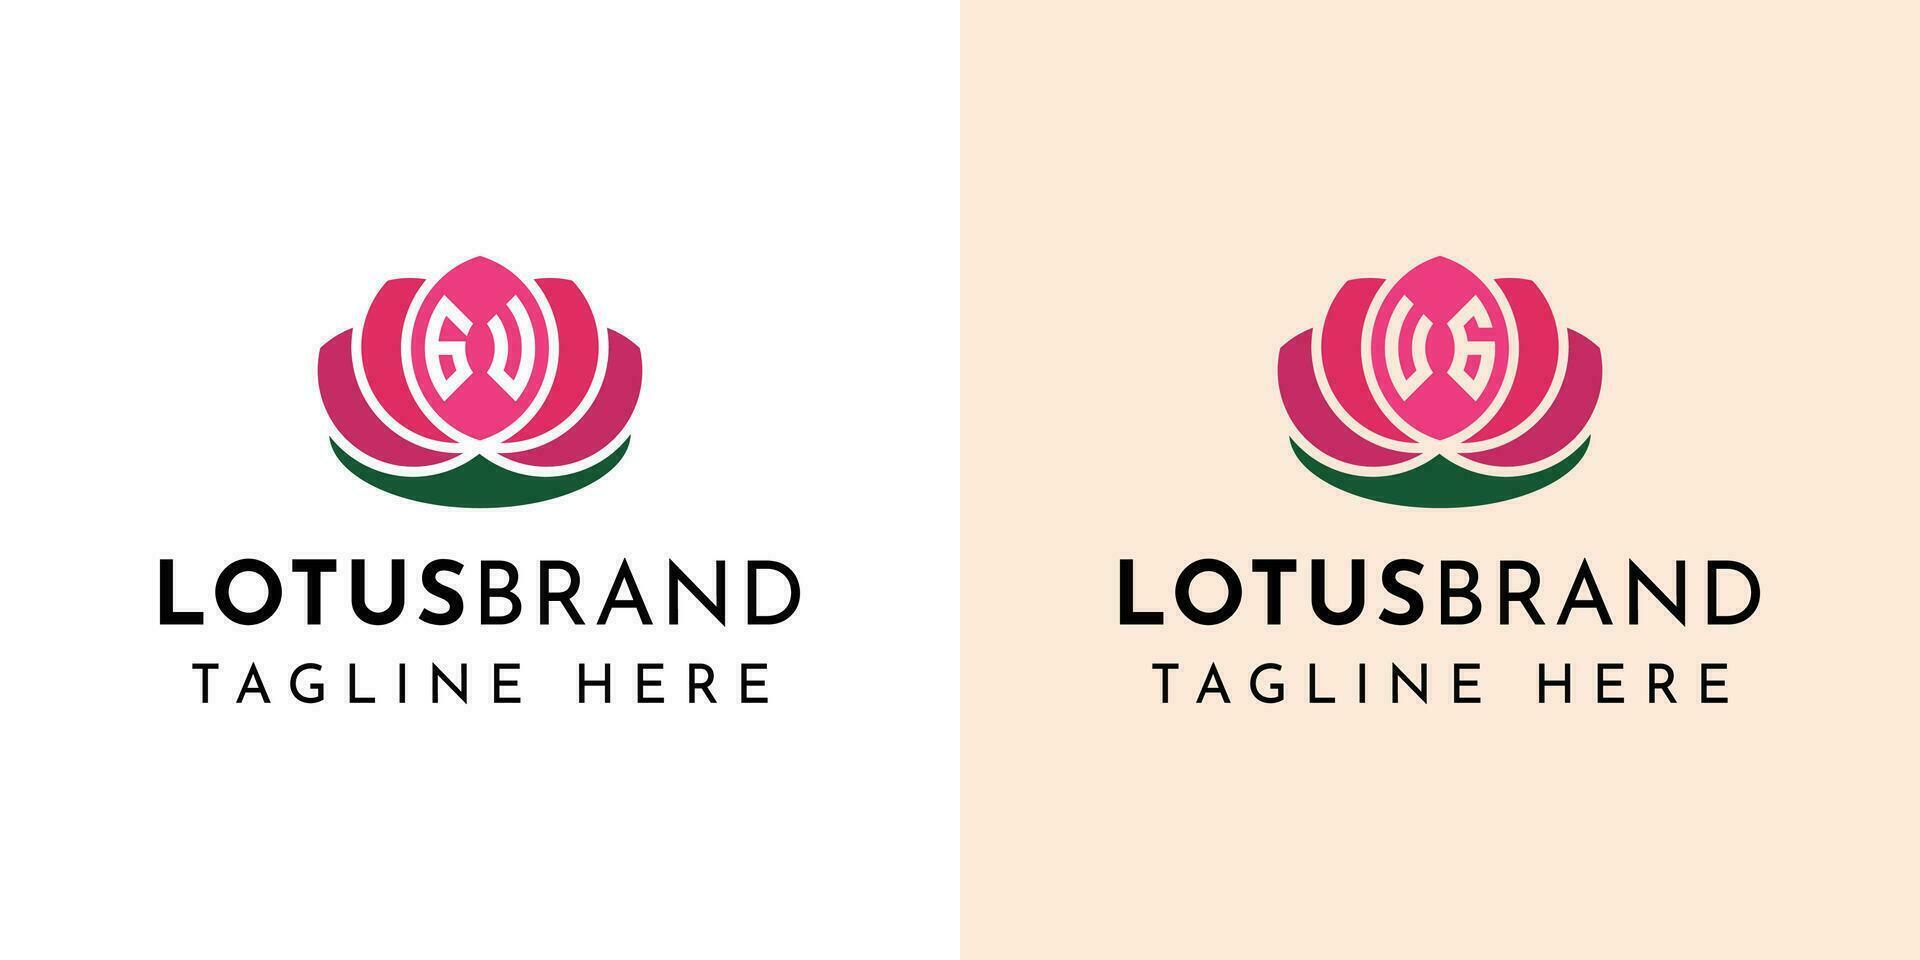 carta gu e ug lótus logotipo definir, adequado para o negócio relacionado para lótus flores com gu ou ug iniciais. vetor